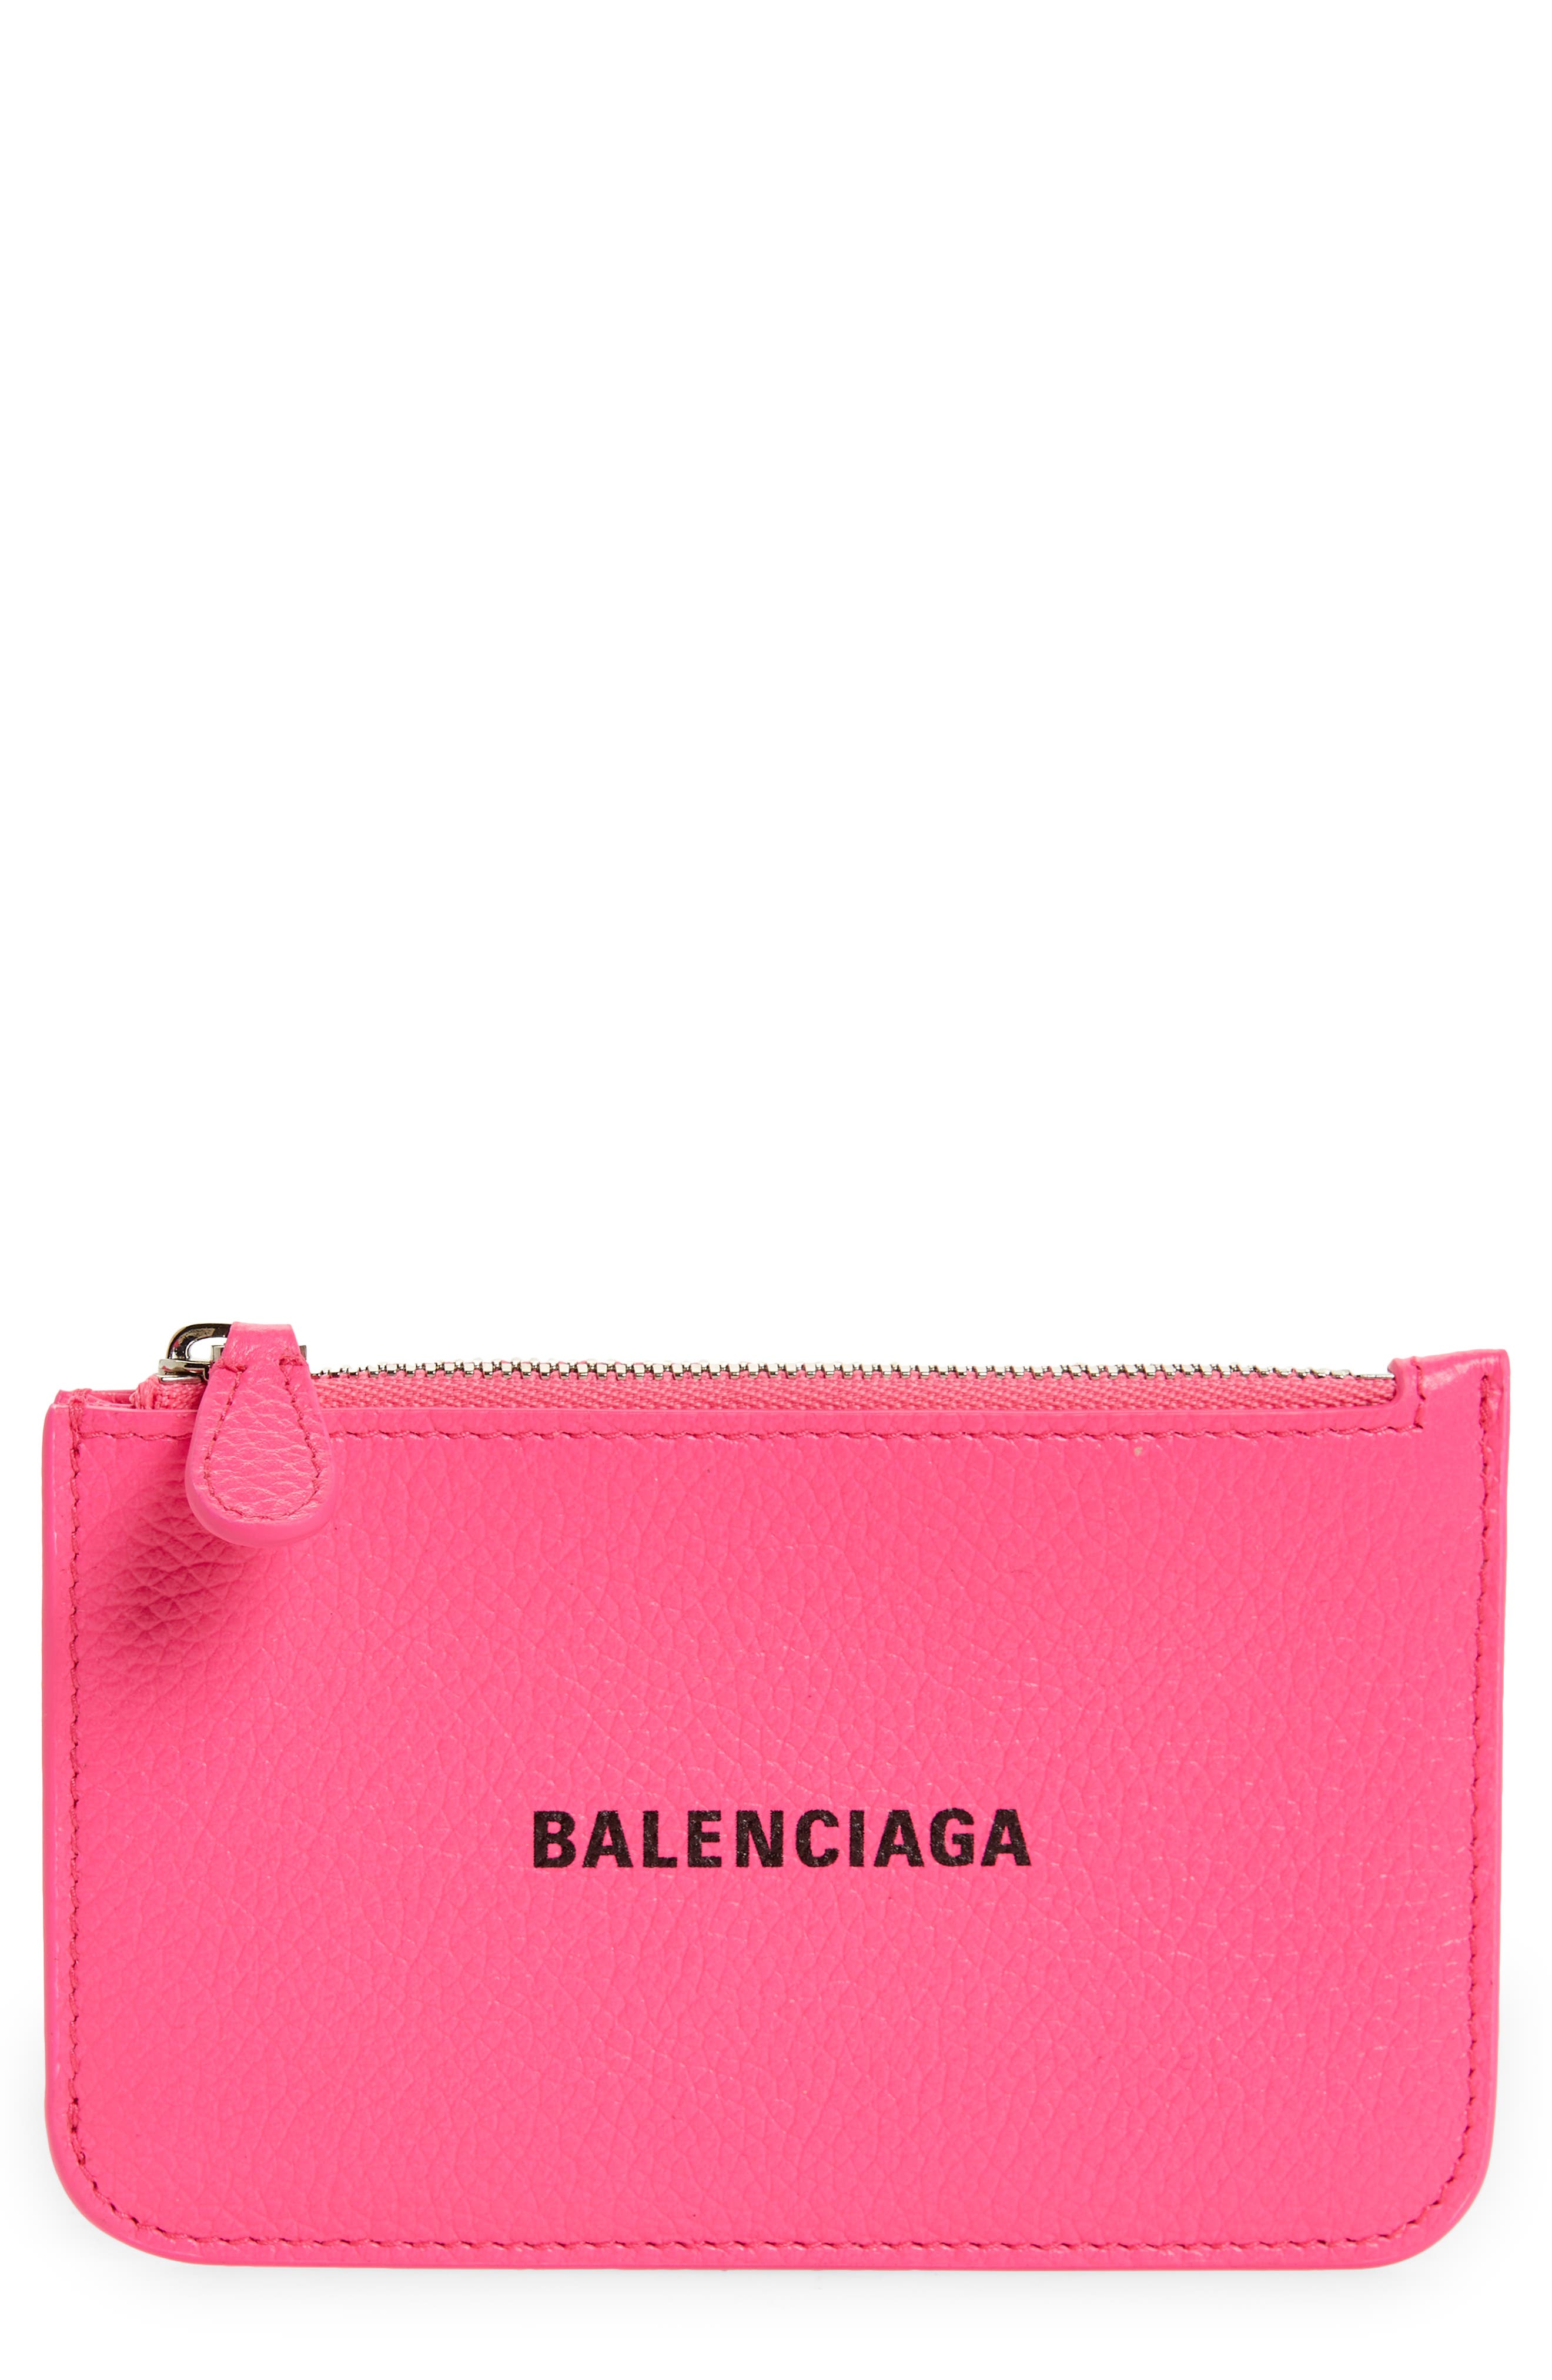 Balenciaga Wallets & Card Cases for Women   Nordstrom